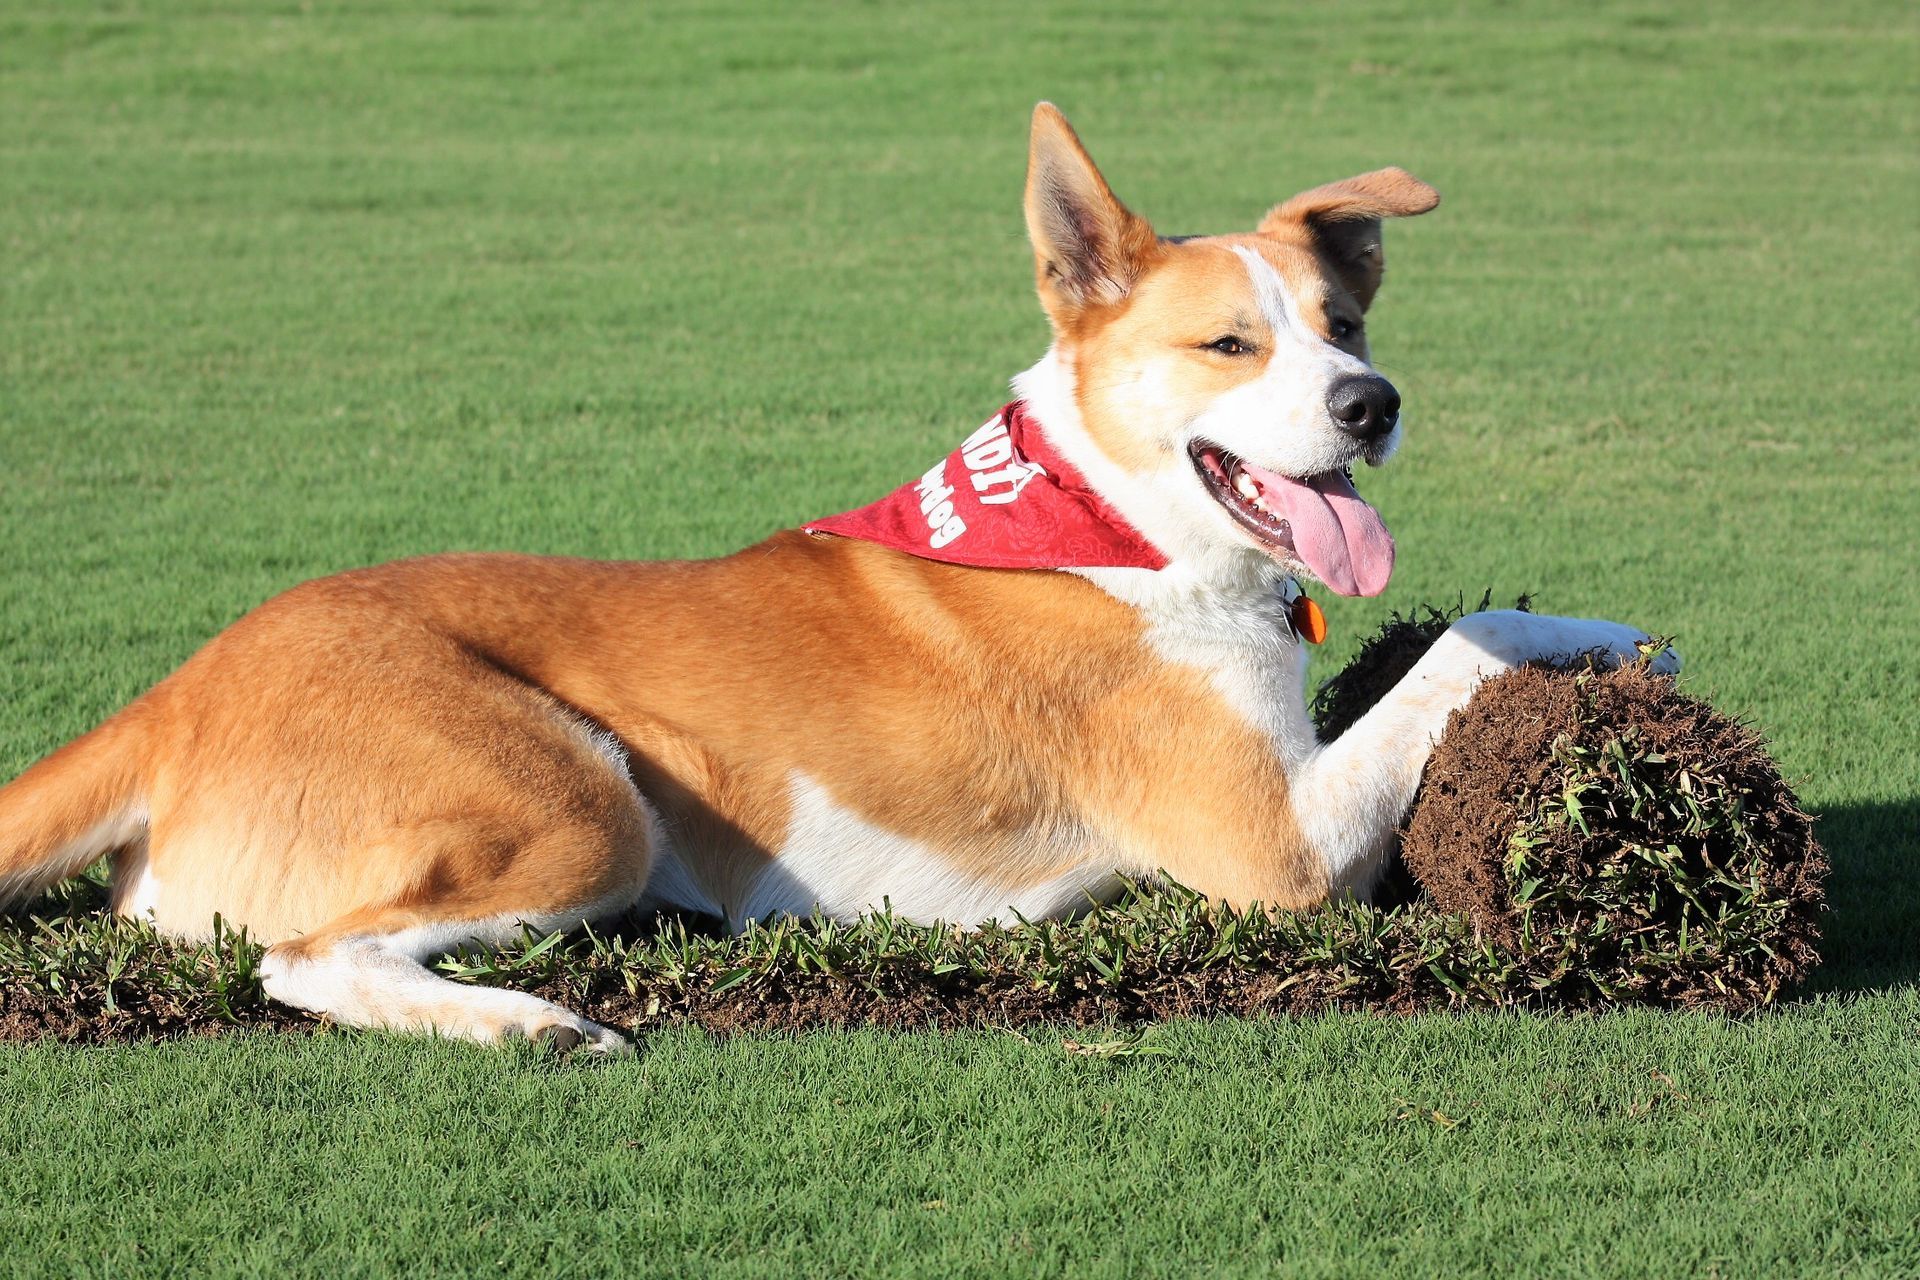 Dog On Roll Of Lawn - Perth, Wa - Westland Turf